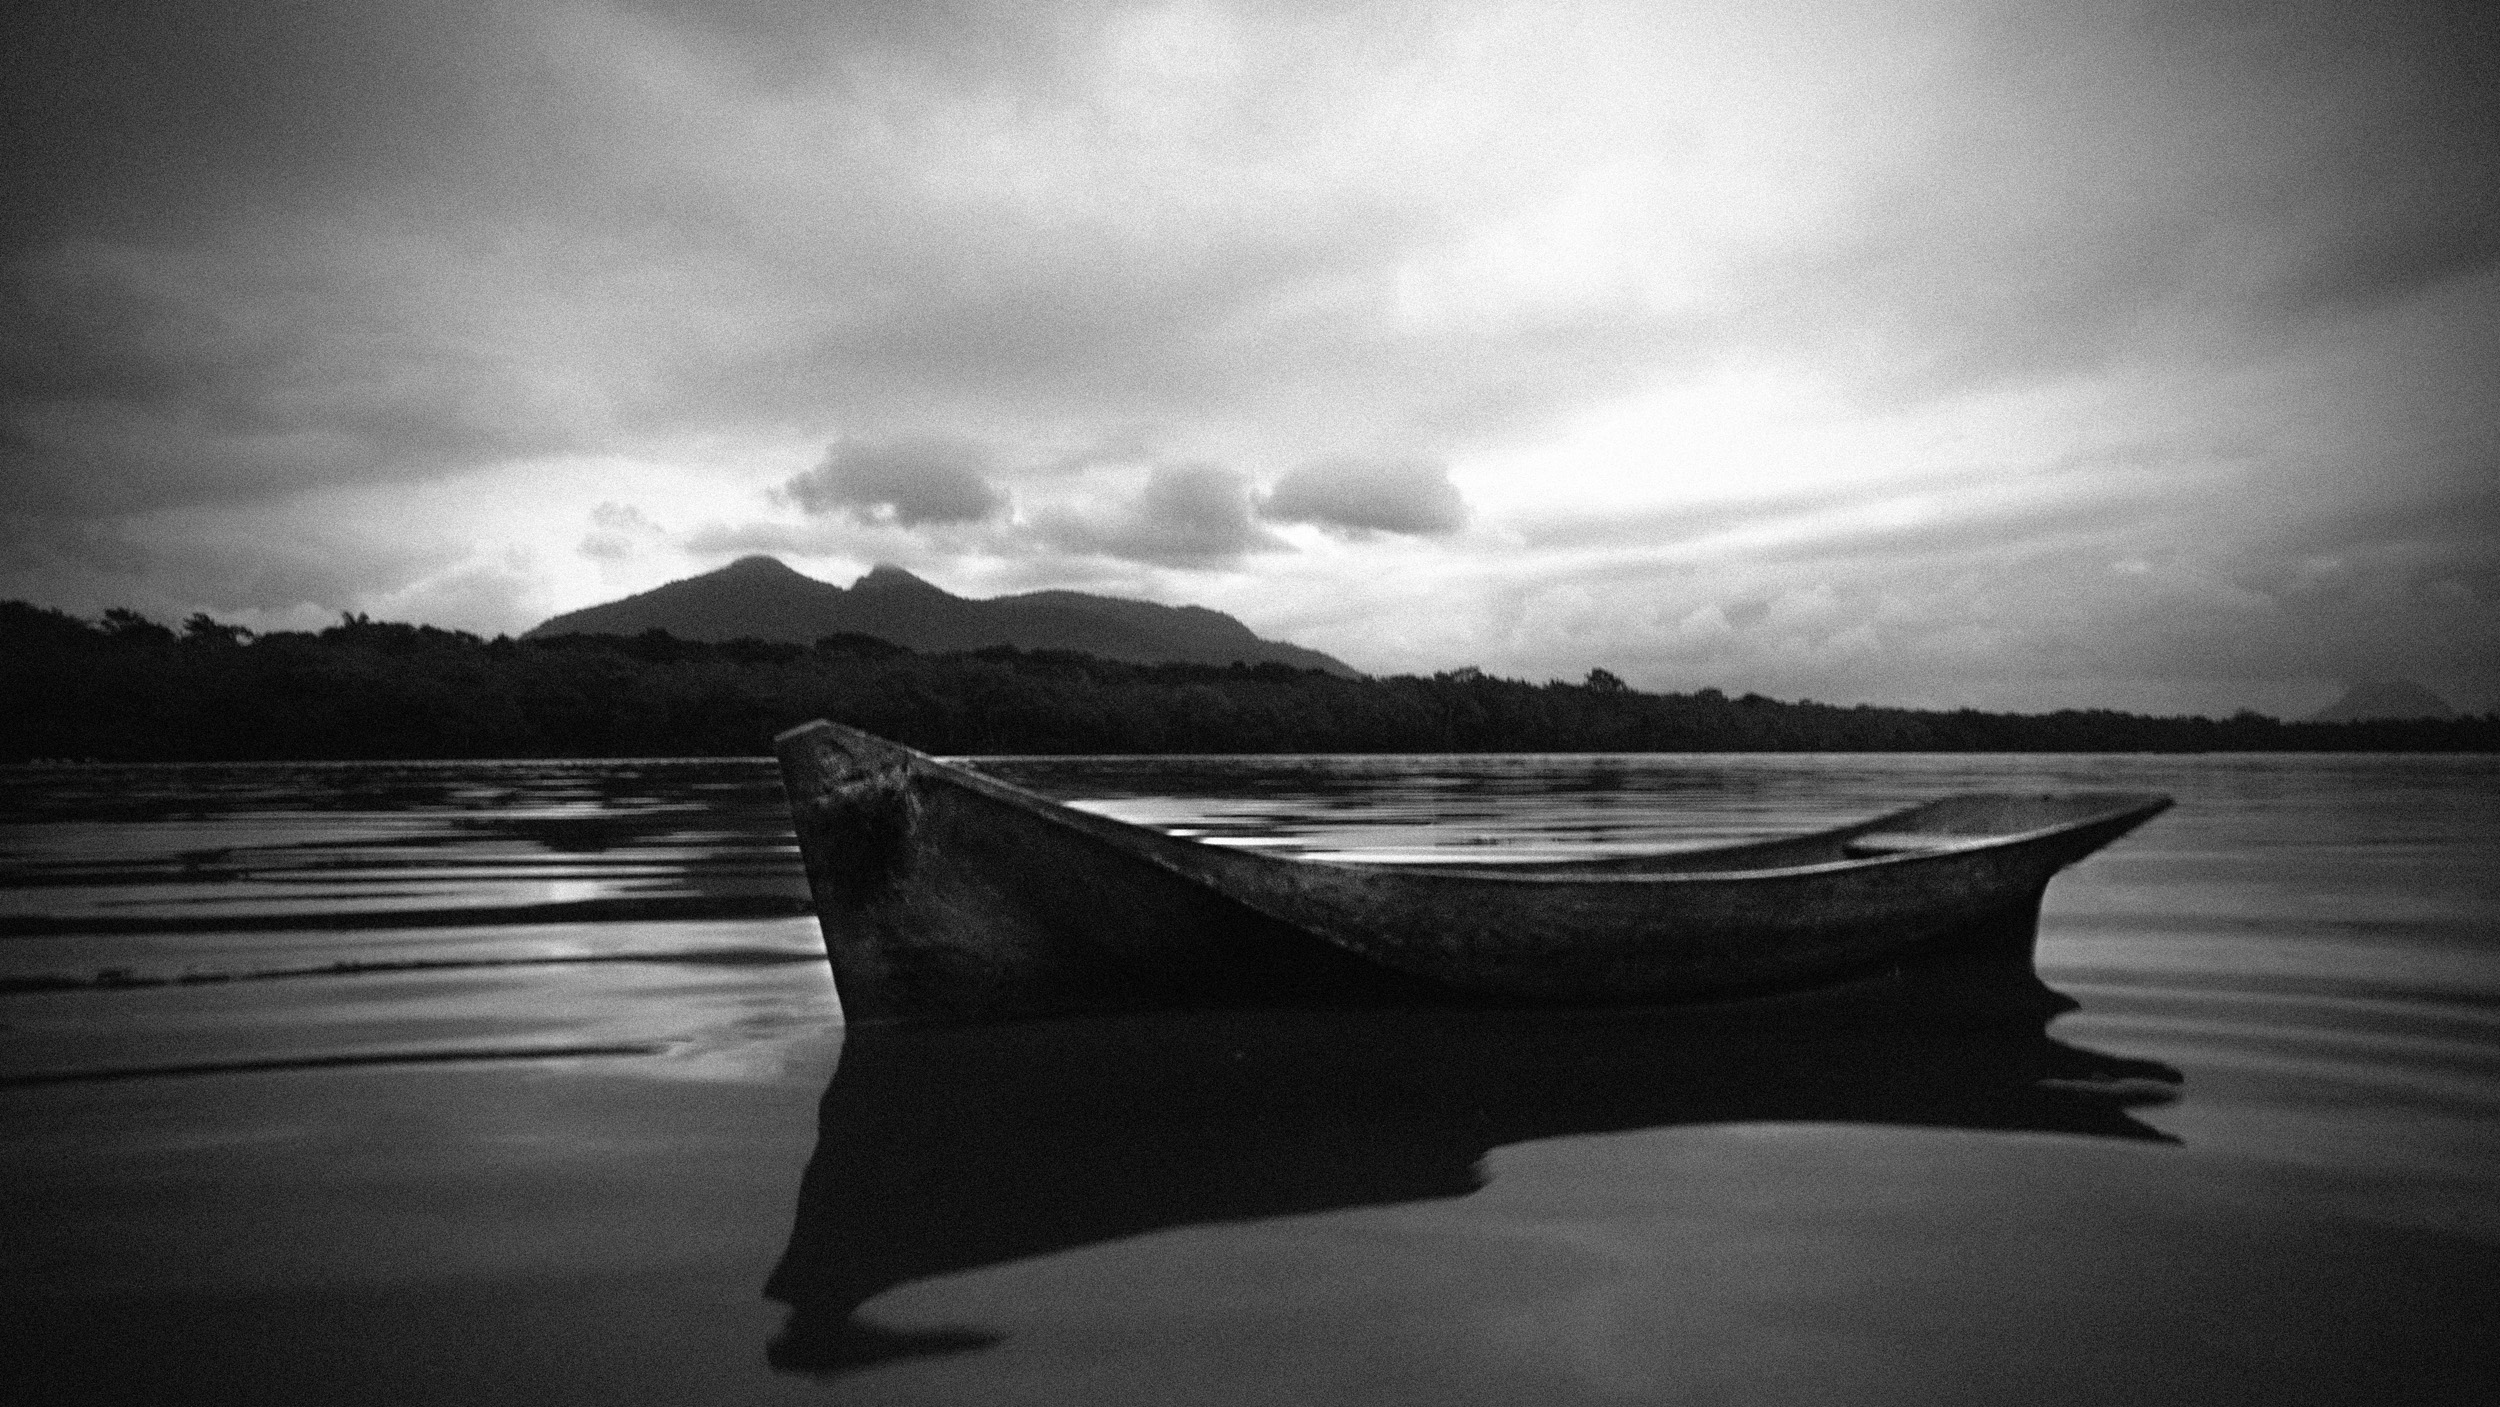 As imagens do fotógrafo José Diniz reconstituem as lembranças de infância às margens do Rio São João, no litoral fluminense